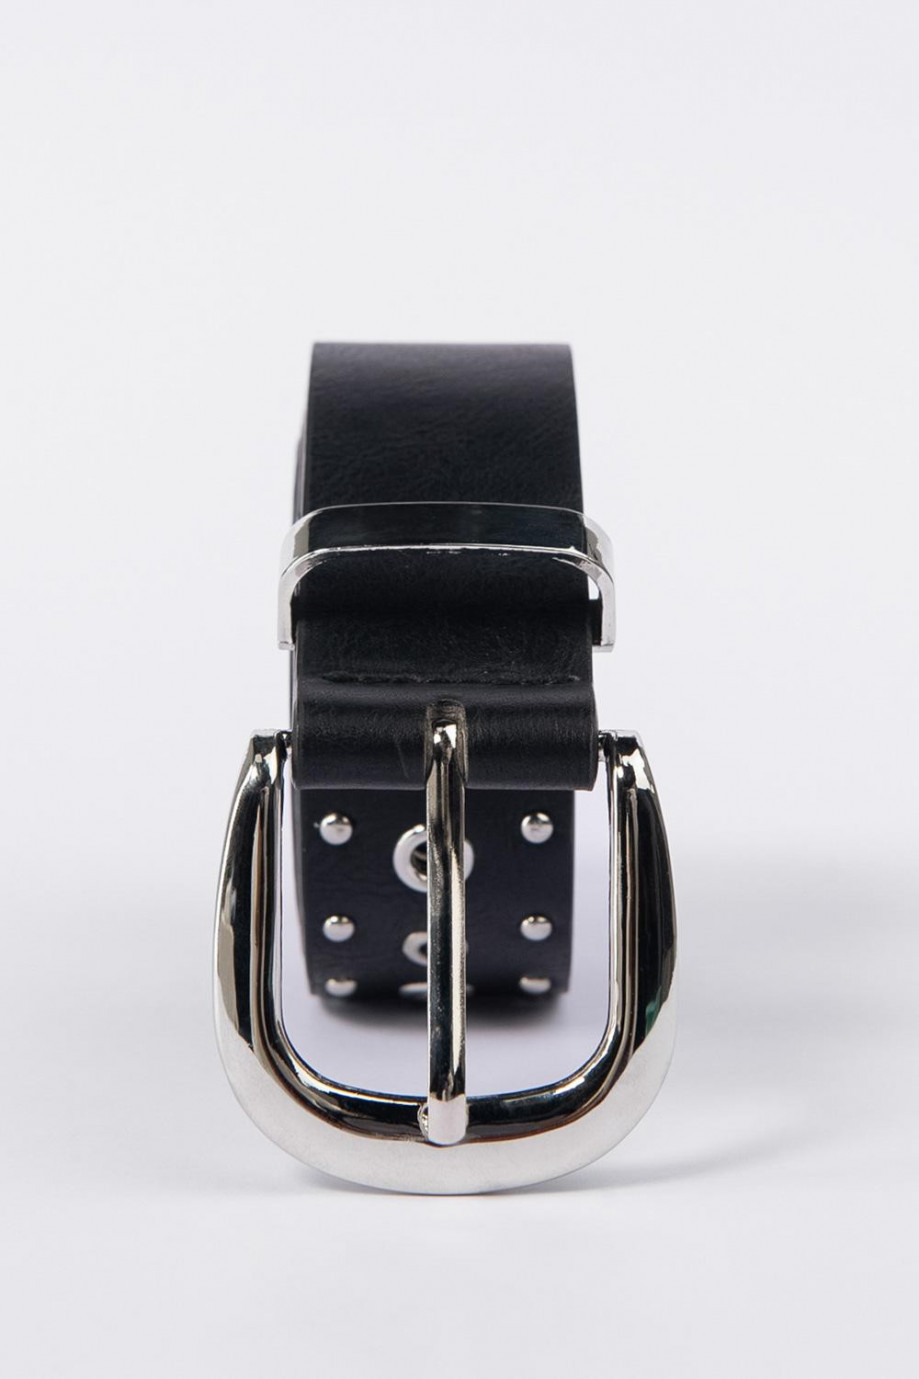 Cinturón para mujer en color negro con taches y ojales, hebilla metalica sencilla.